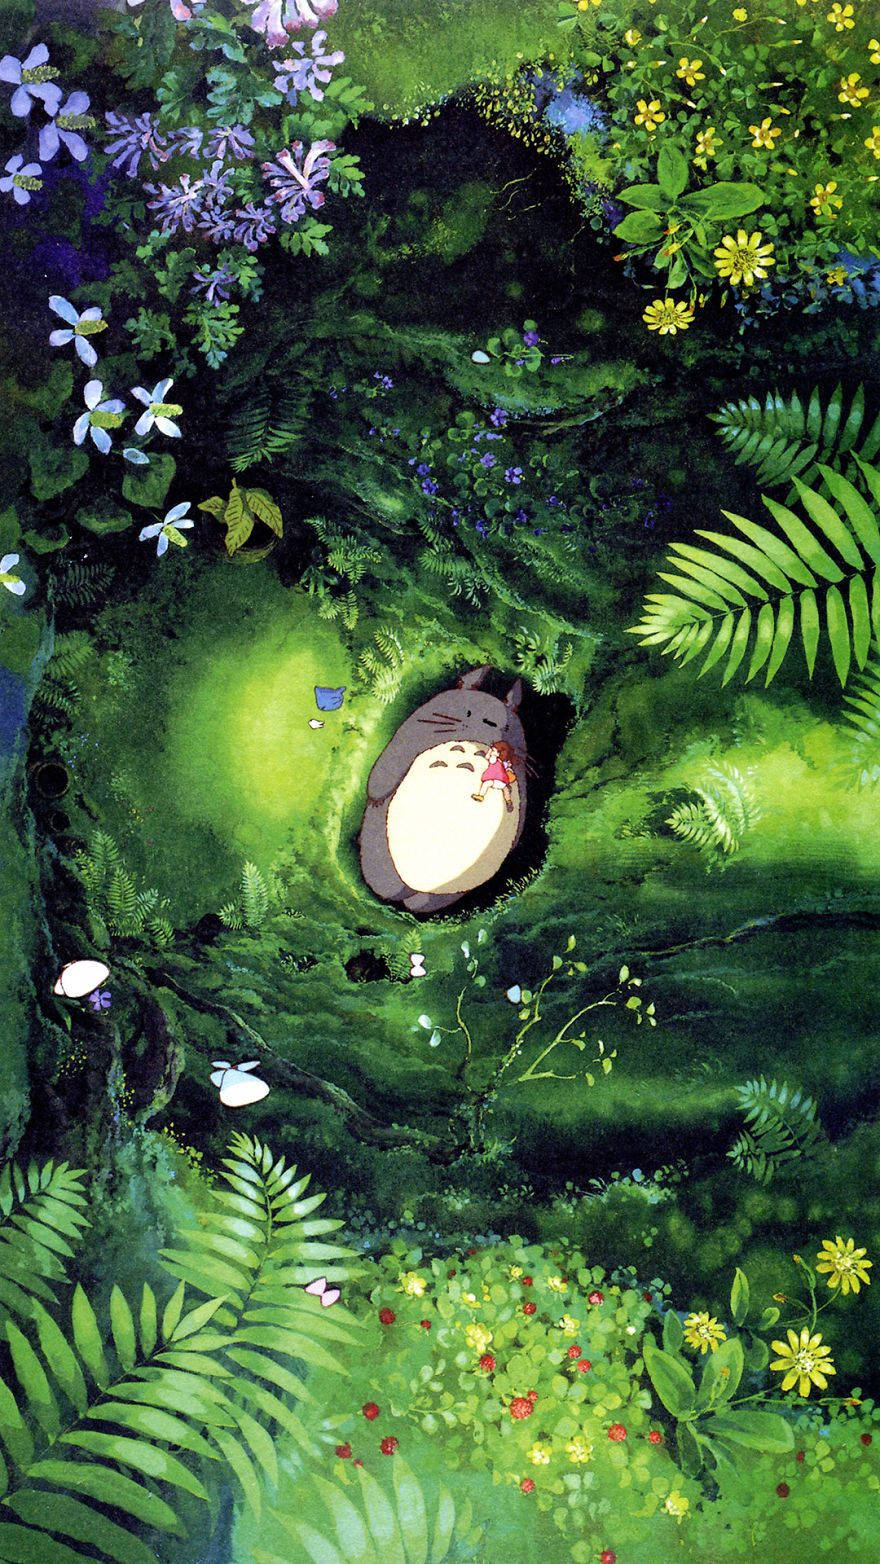 Diemagie Erwartet Sie! Genießen Sie Die Exquisite Welt Von Studio Ghibli Auf Ihrem Iphone. Wallpaper